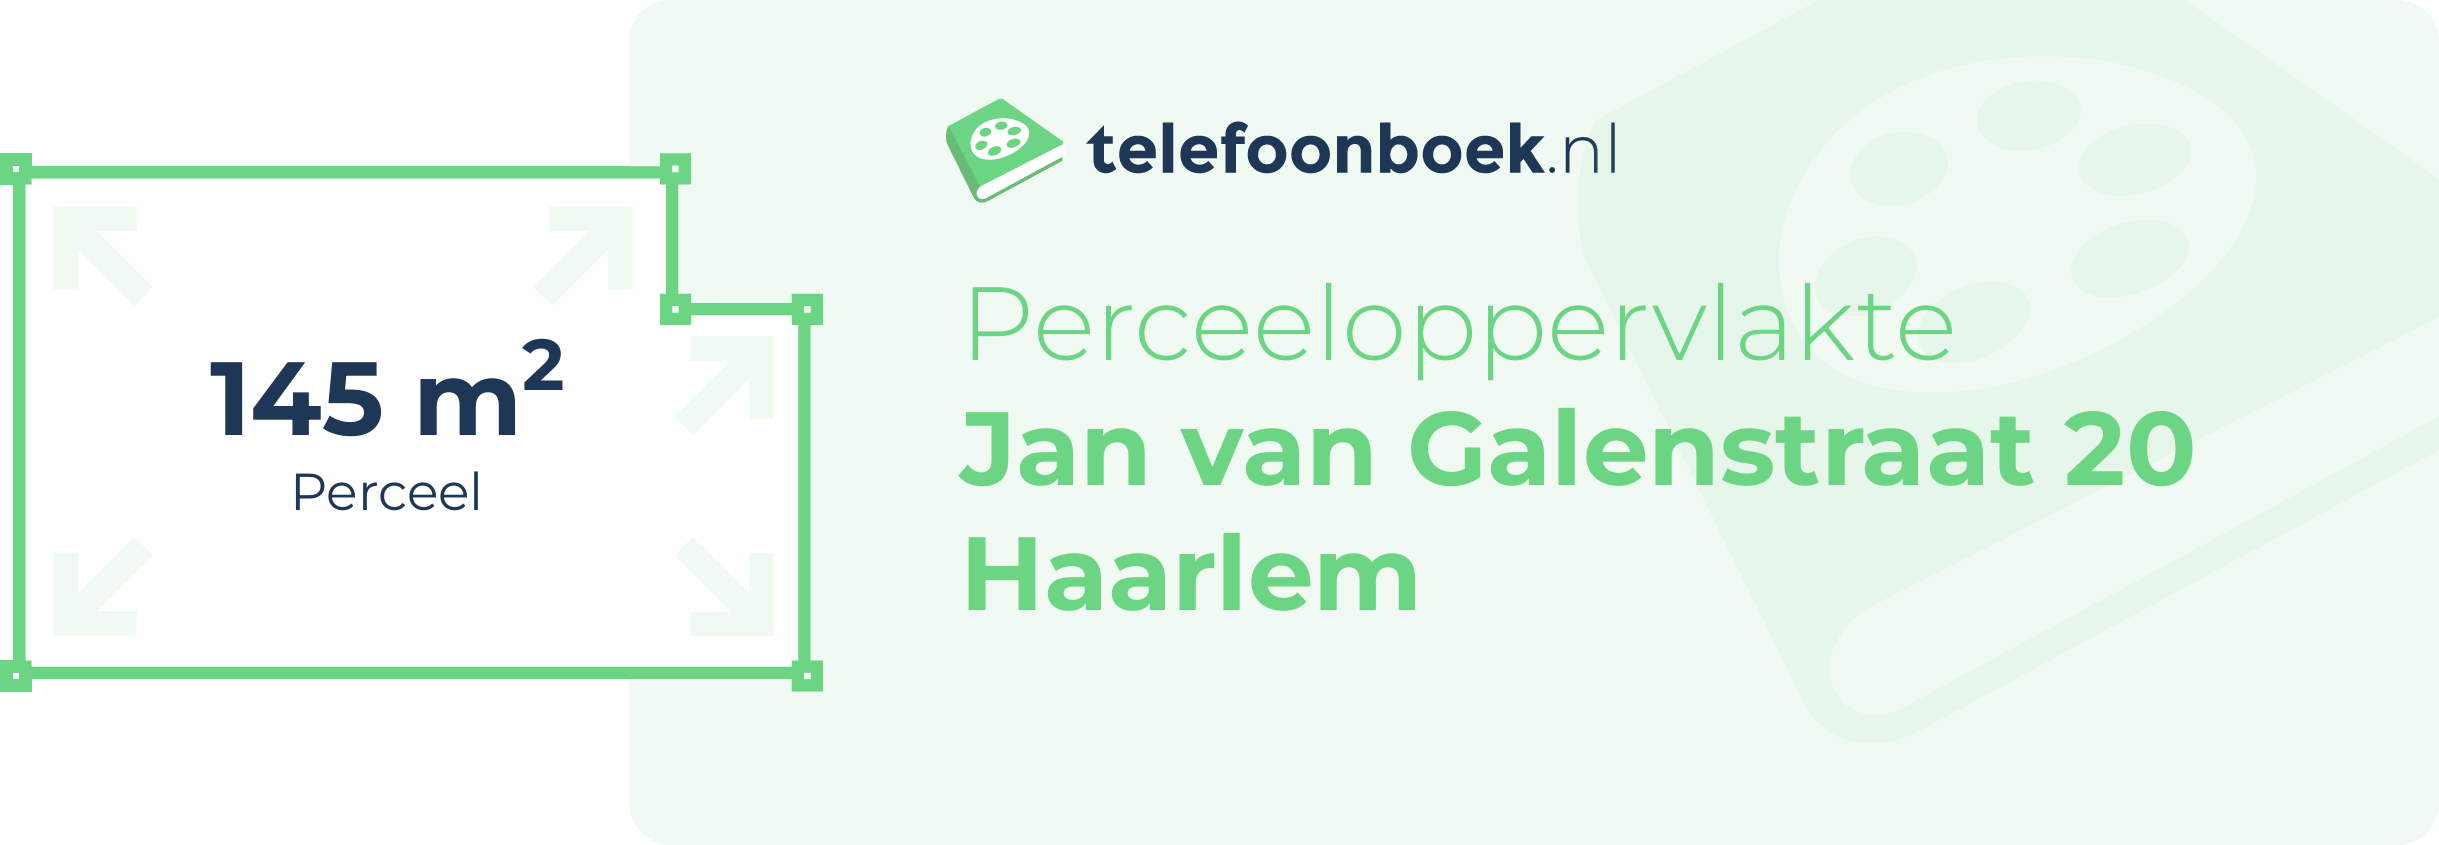 Perceeloppervlakte Jan Van Galenstraat 20 Haarlem